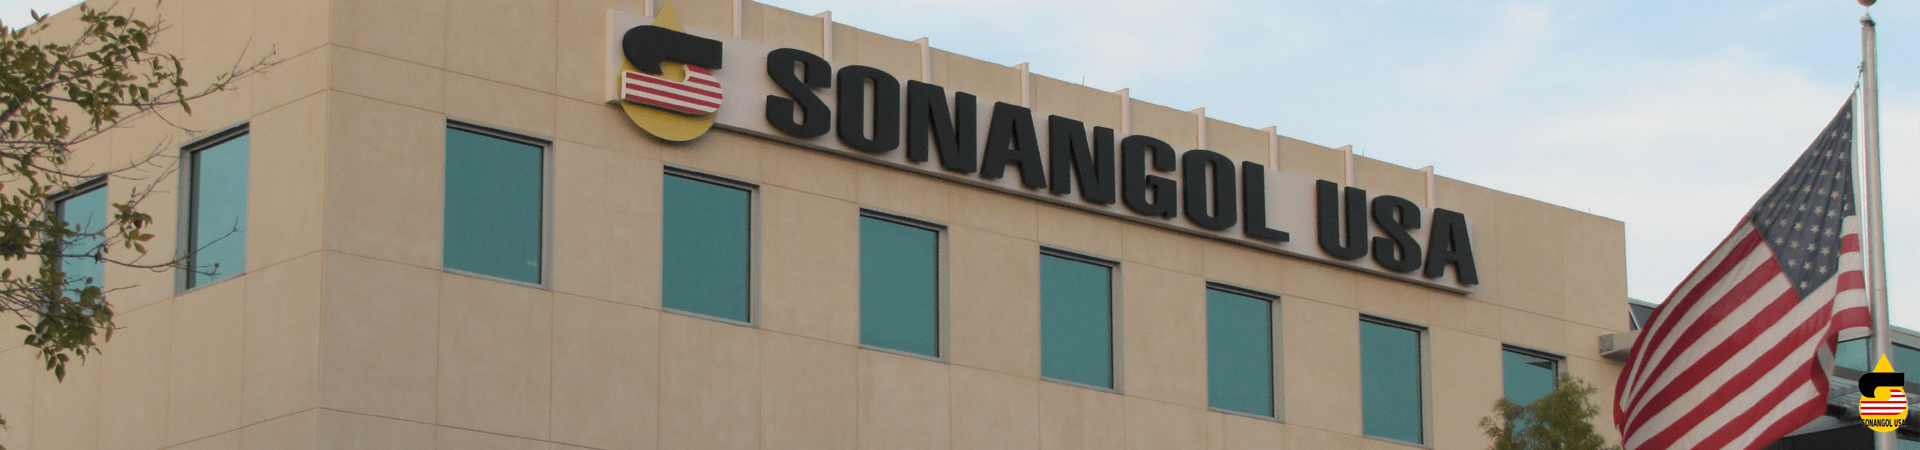 Services, Sonangol USA, Houston, Texas